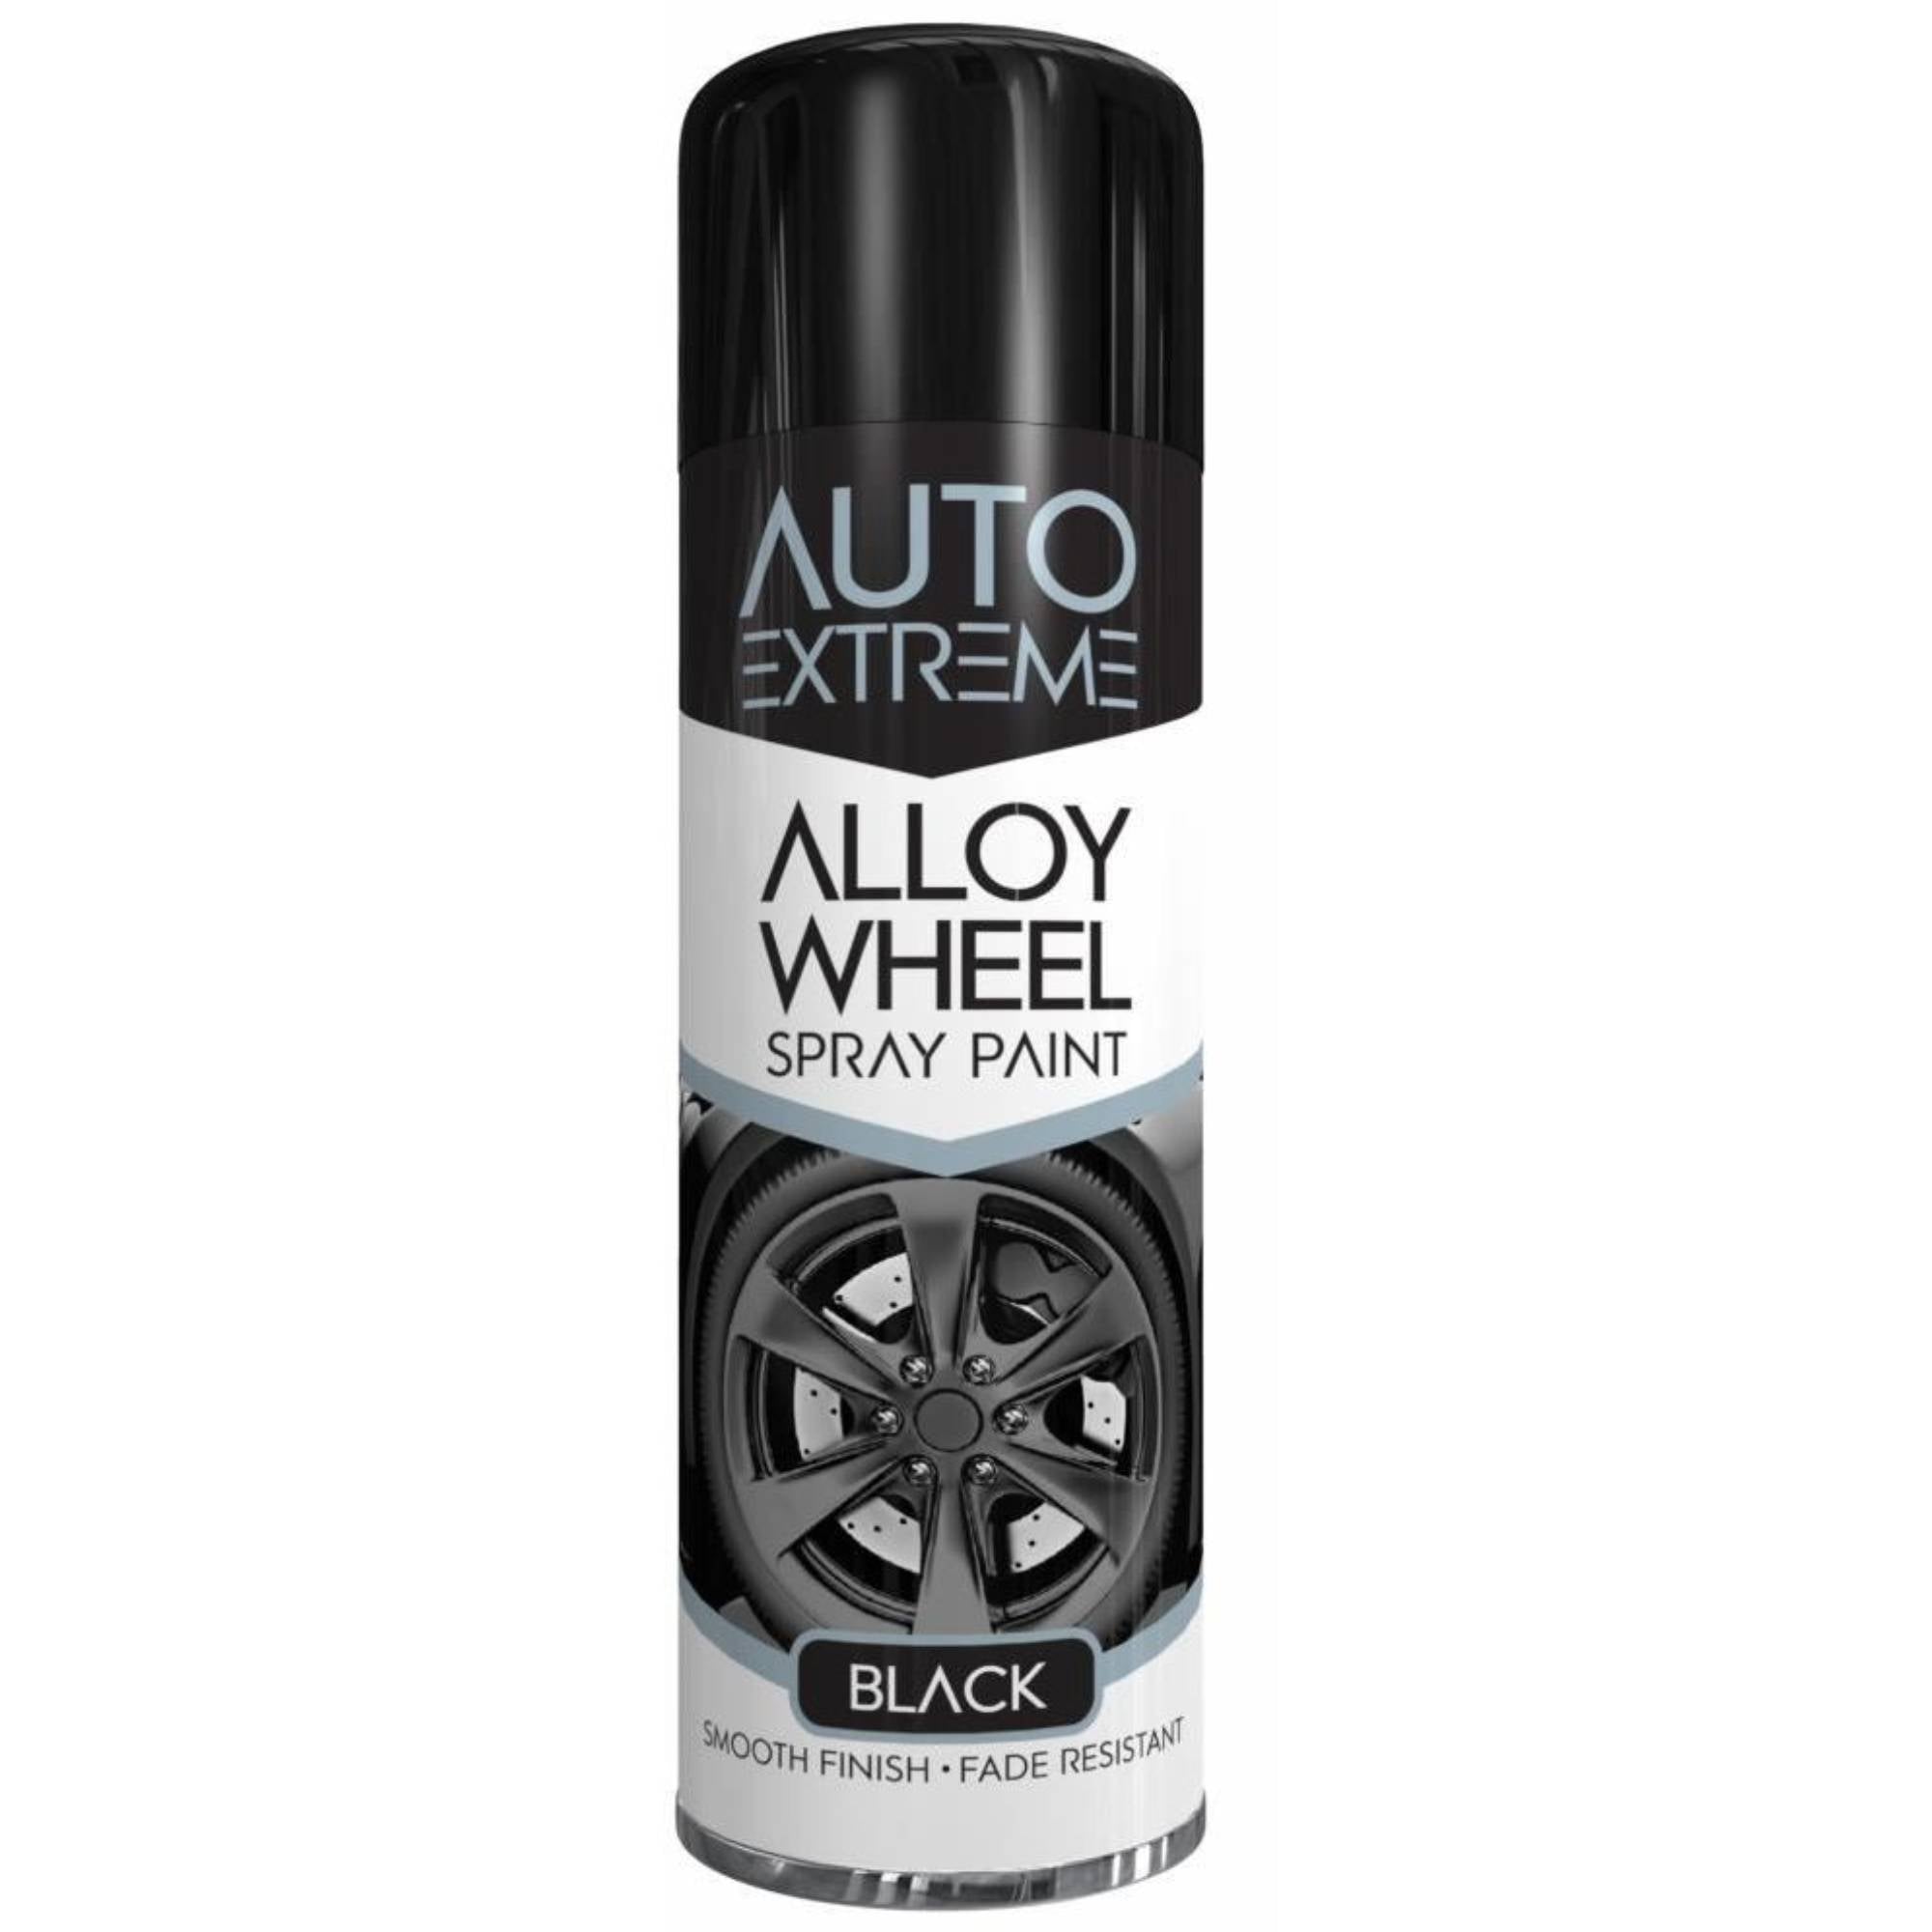 AUTO EXTREME Alloy Wheel Black Spray Paint 300ml